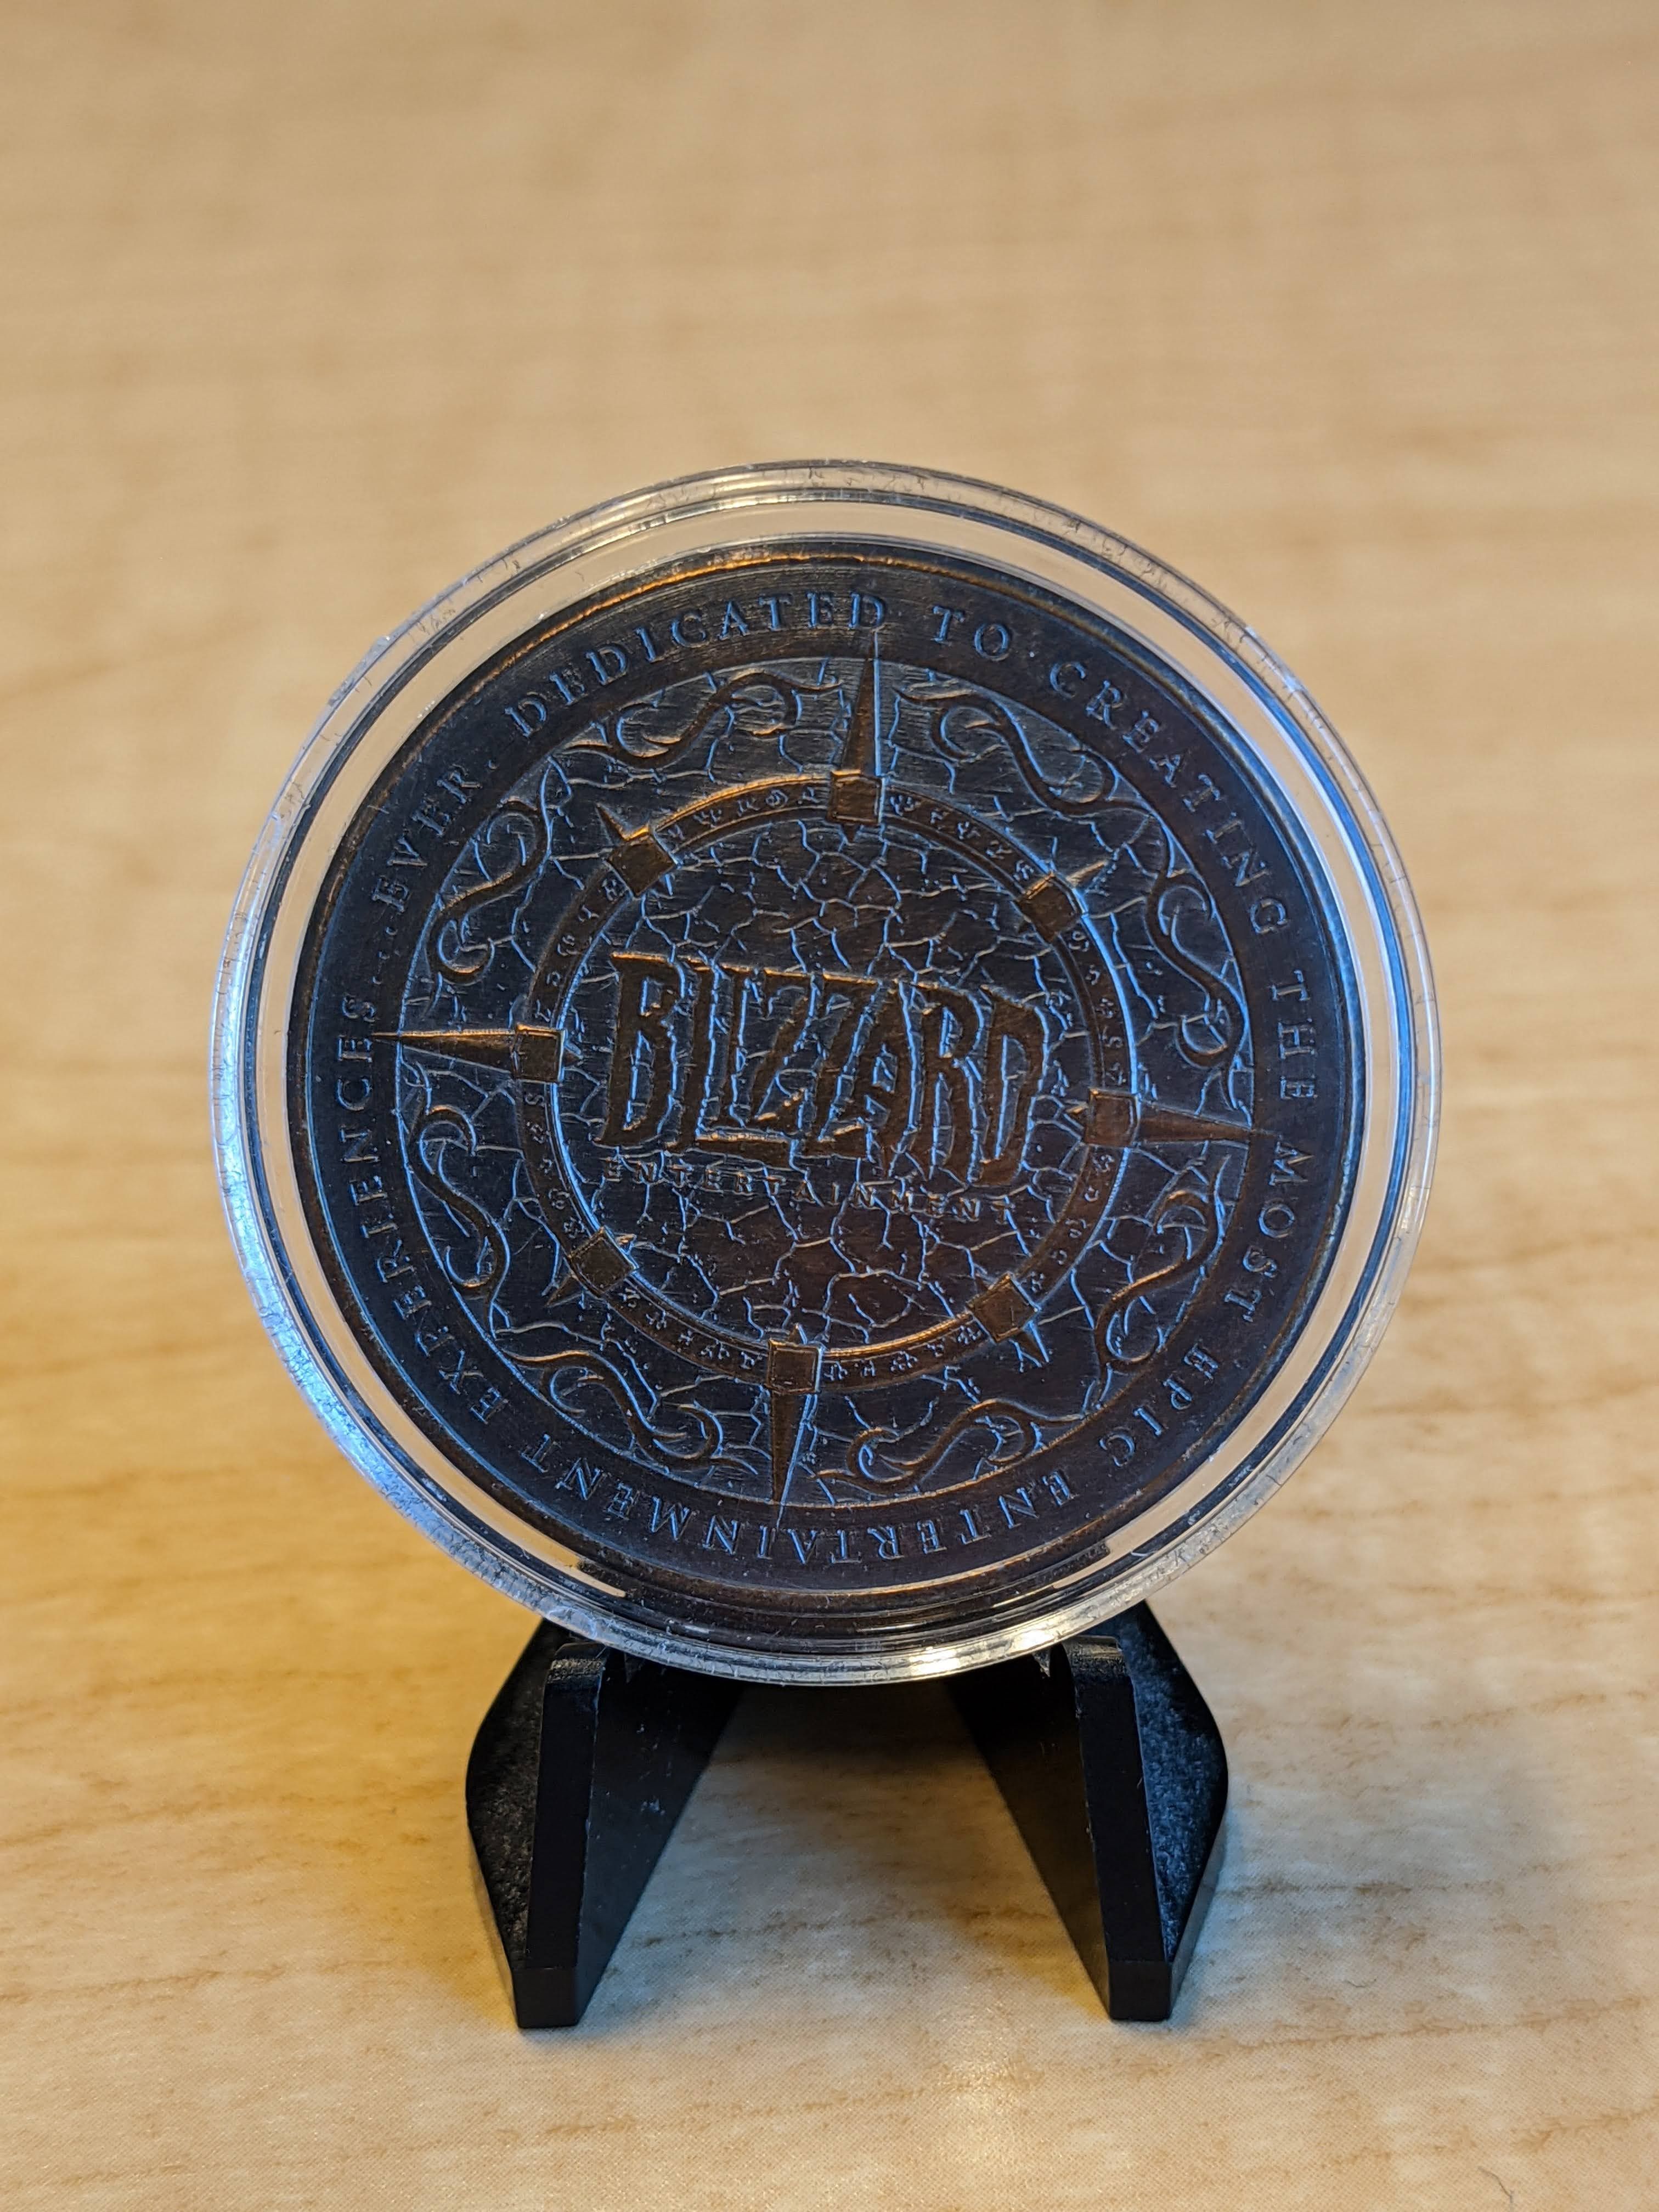 Монета Blizzard за три года работы в компании. Источник: twitter.com/EvilDCrab